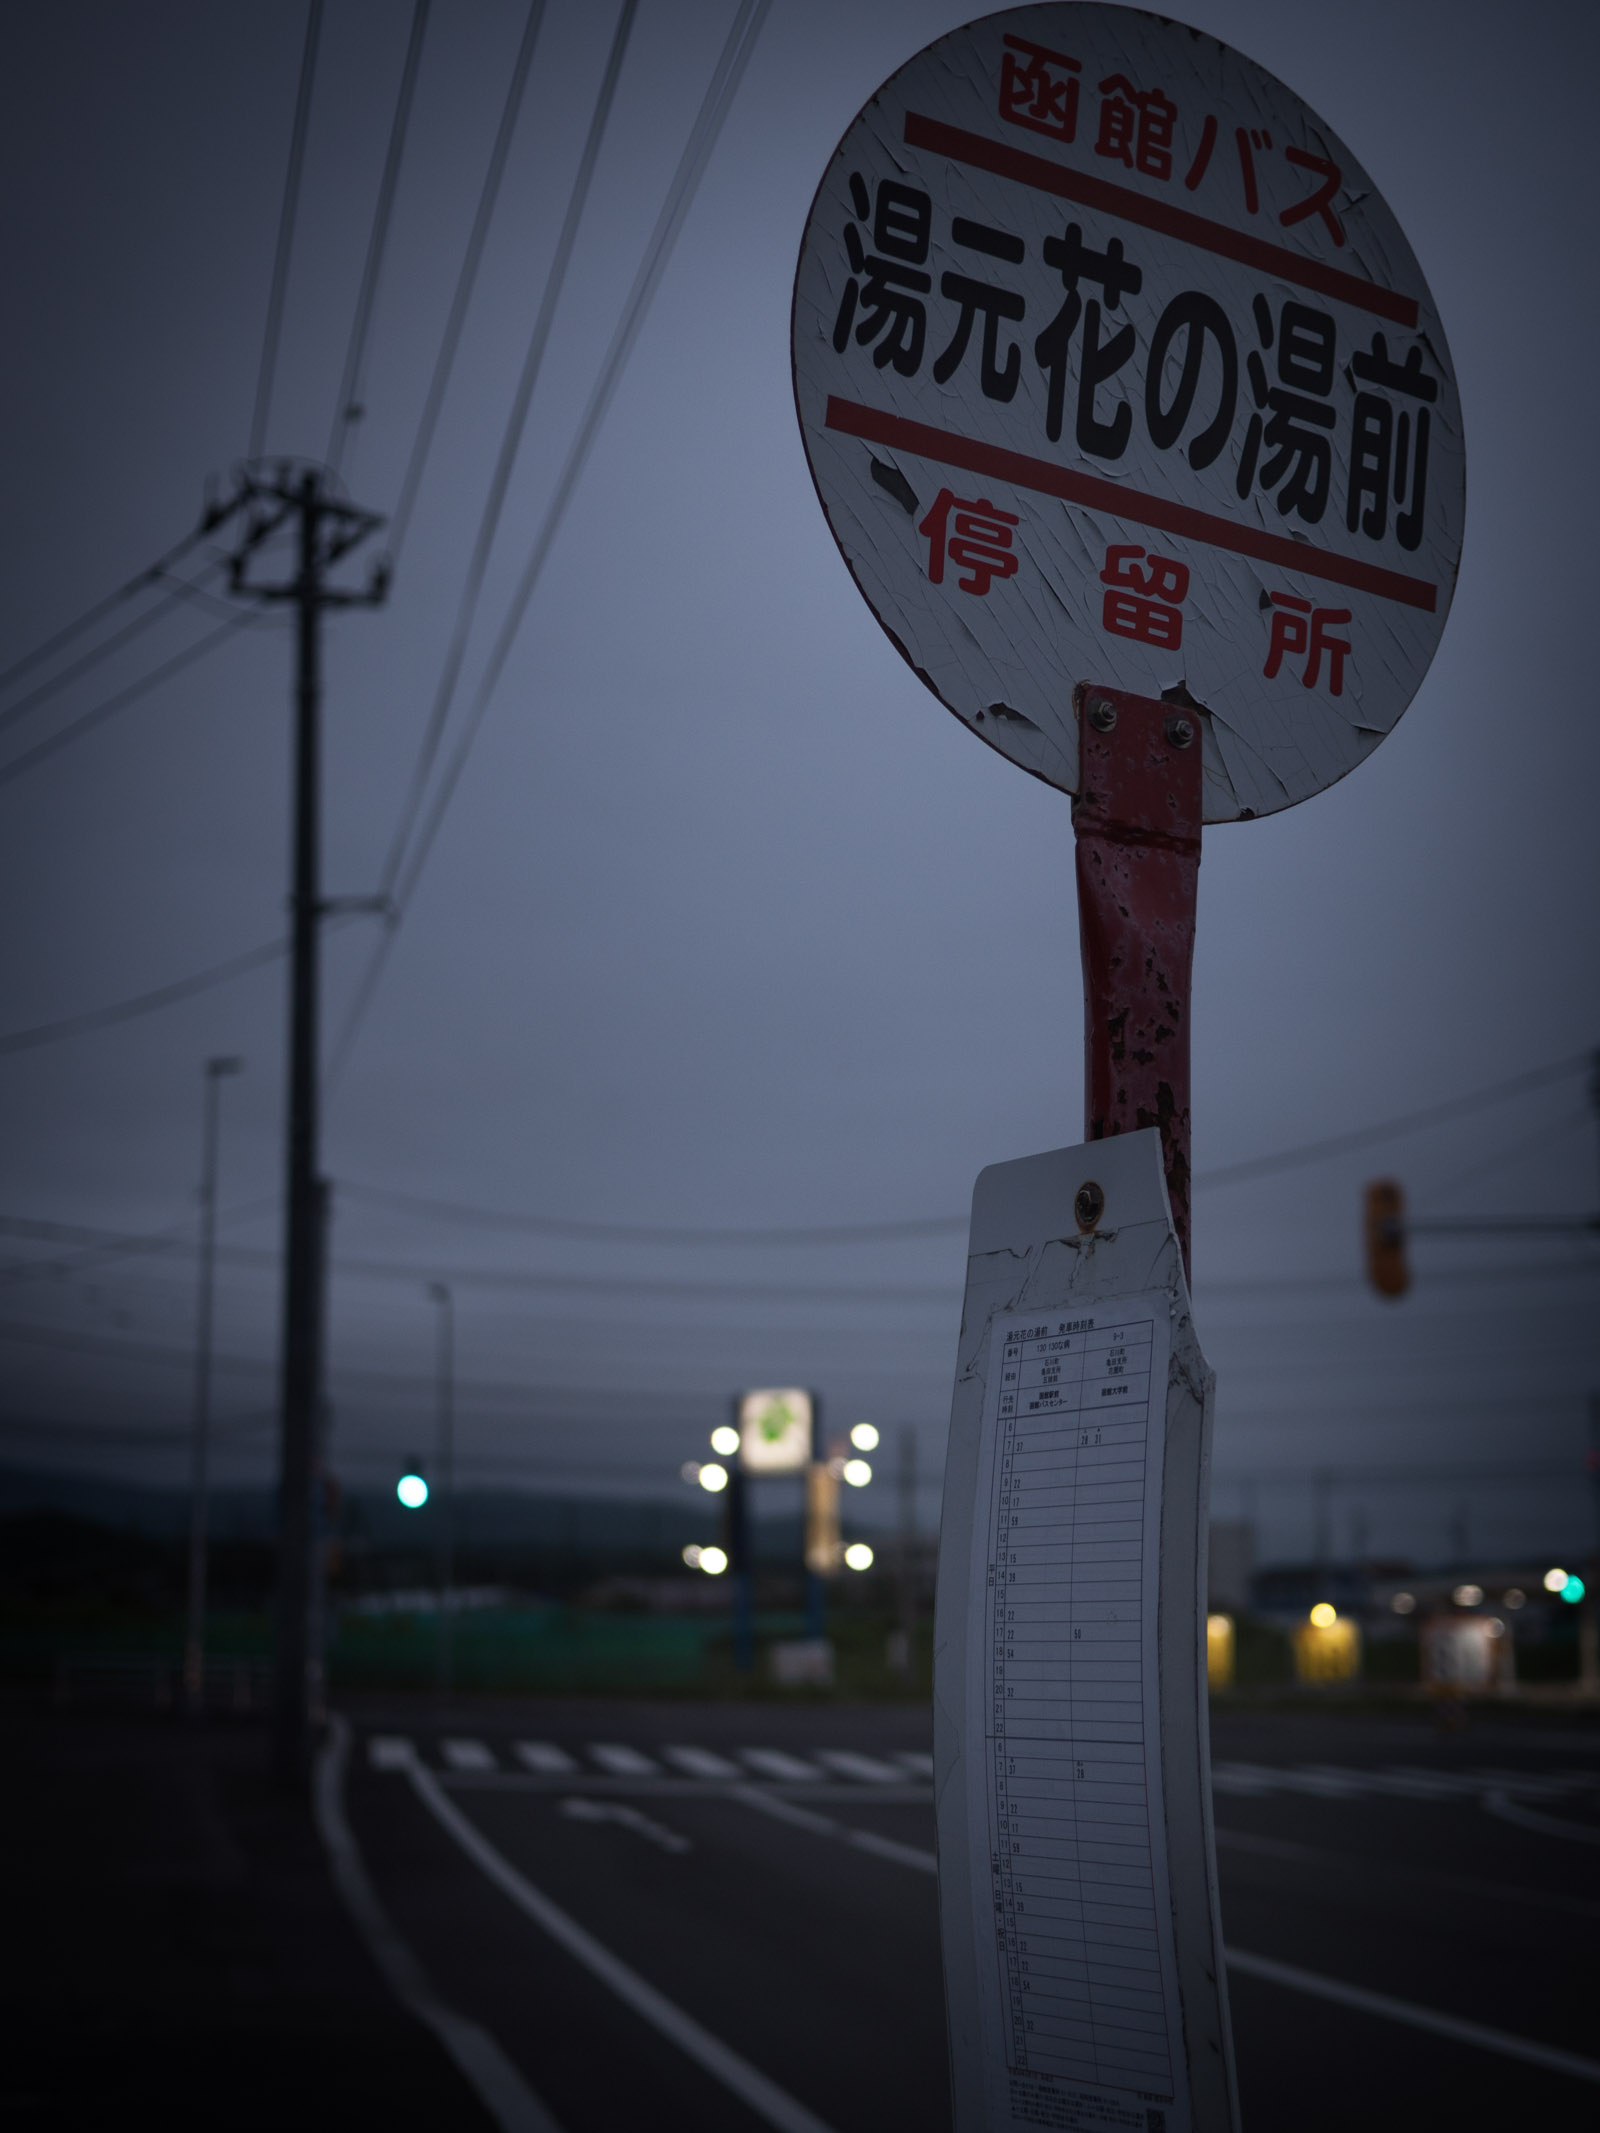 函館バス湯元花の湯前バス亭に訪れる宵闇　DMC-GX8 + LUMIX 20mm